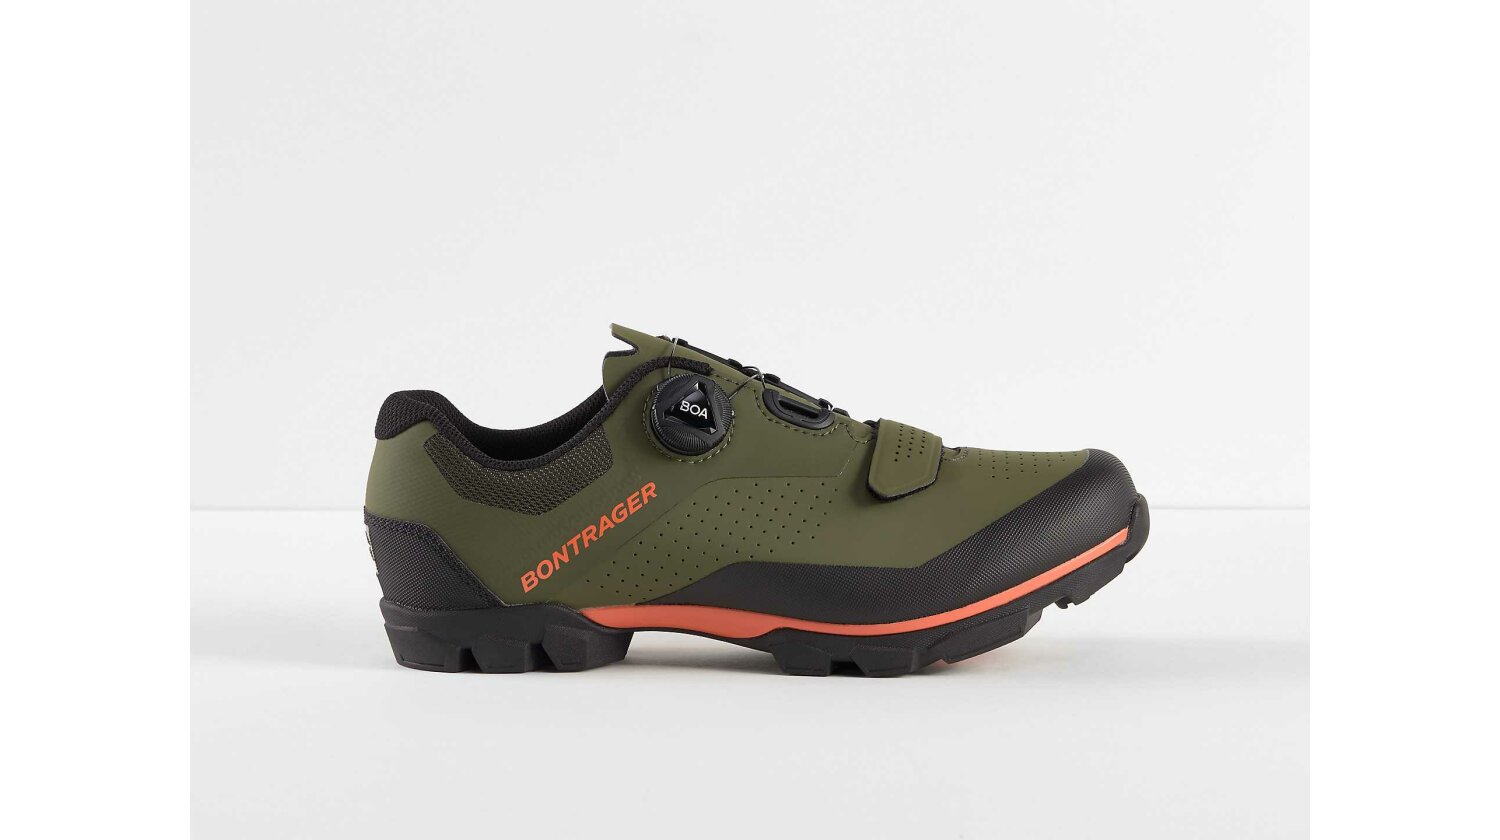 Bontrager Foray MTB-Schuhe olive grey/radioactive orange